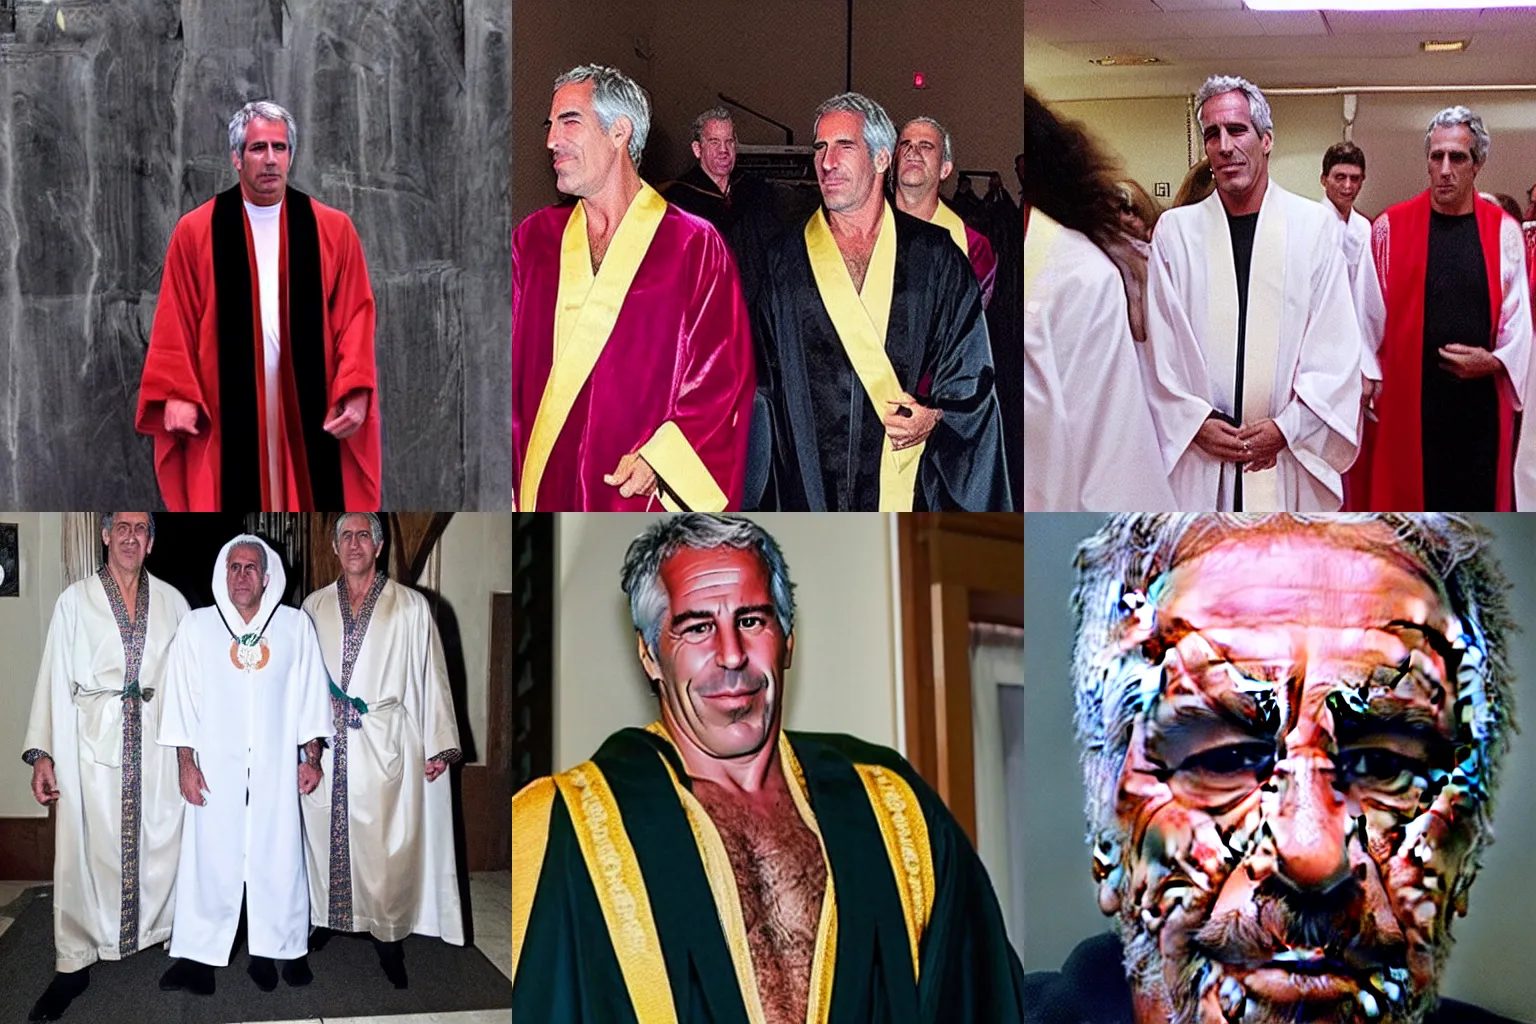 Prompt: Jeffrey Epstein wearing ceremonial robes, creepy, dark